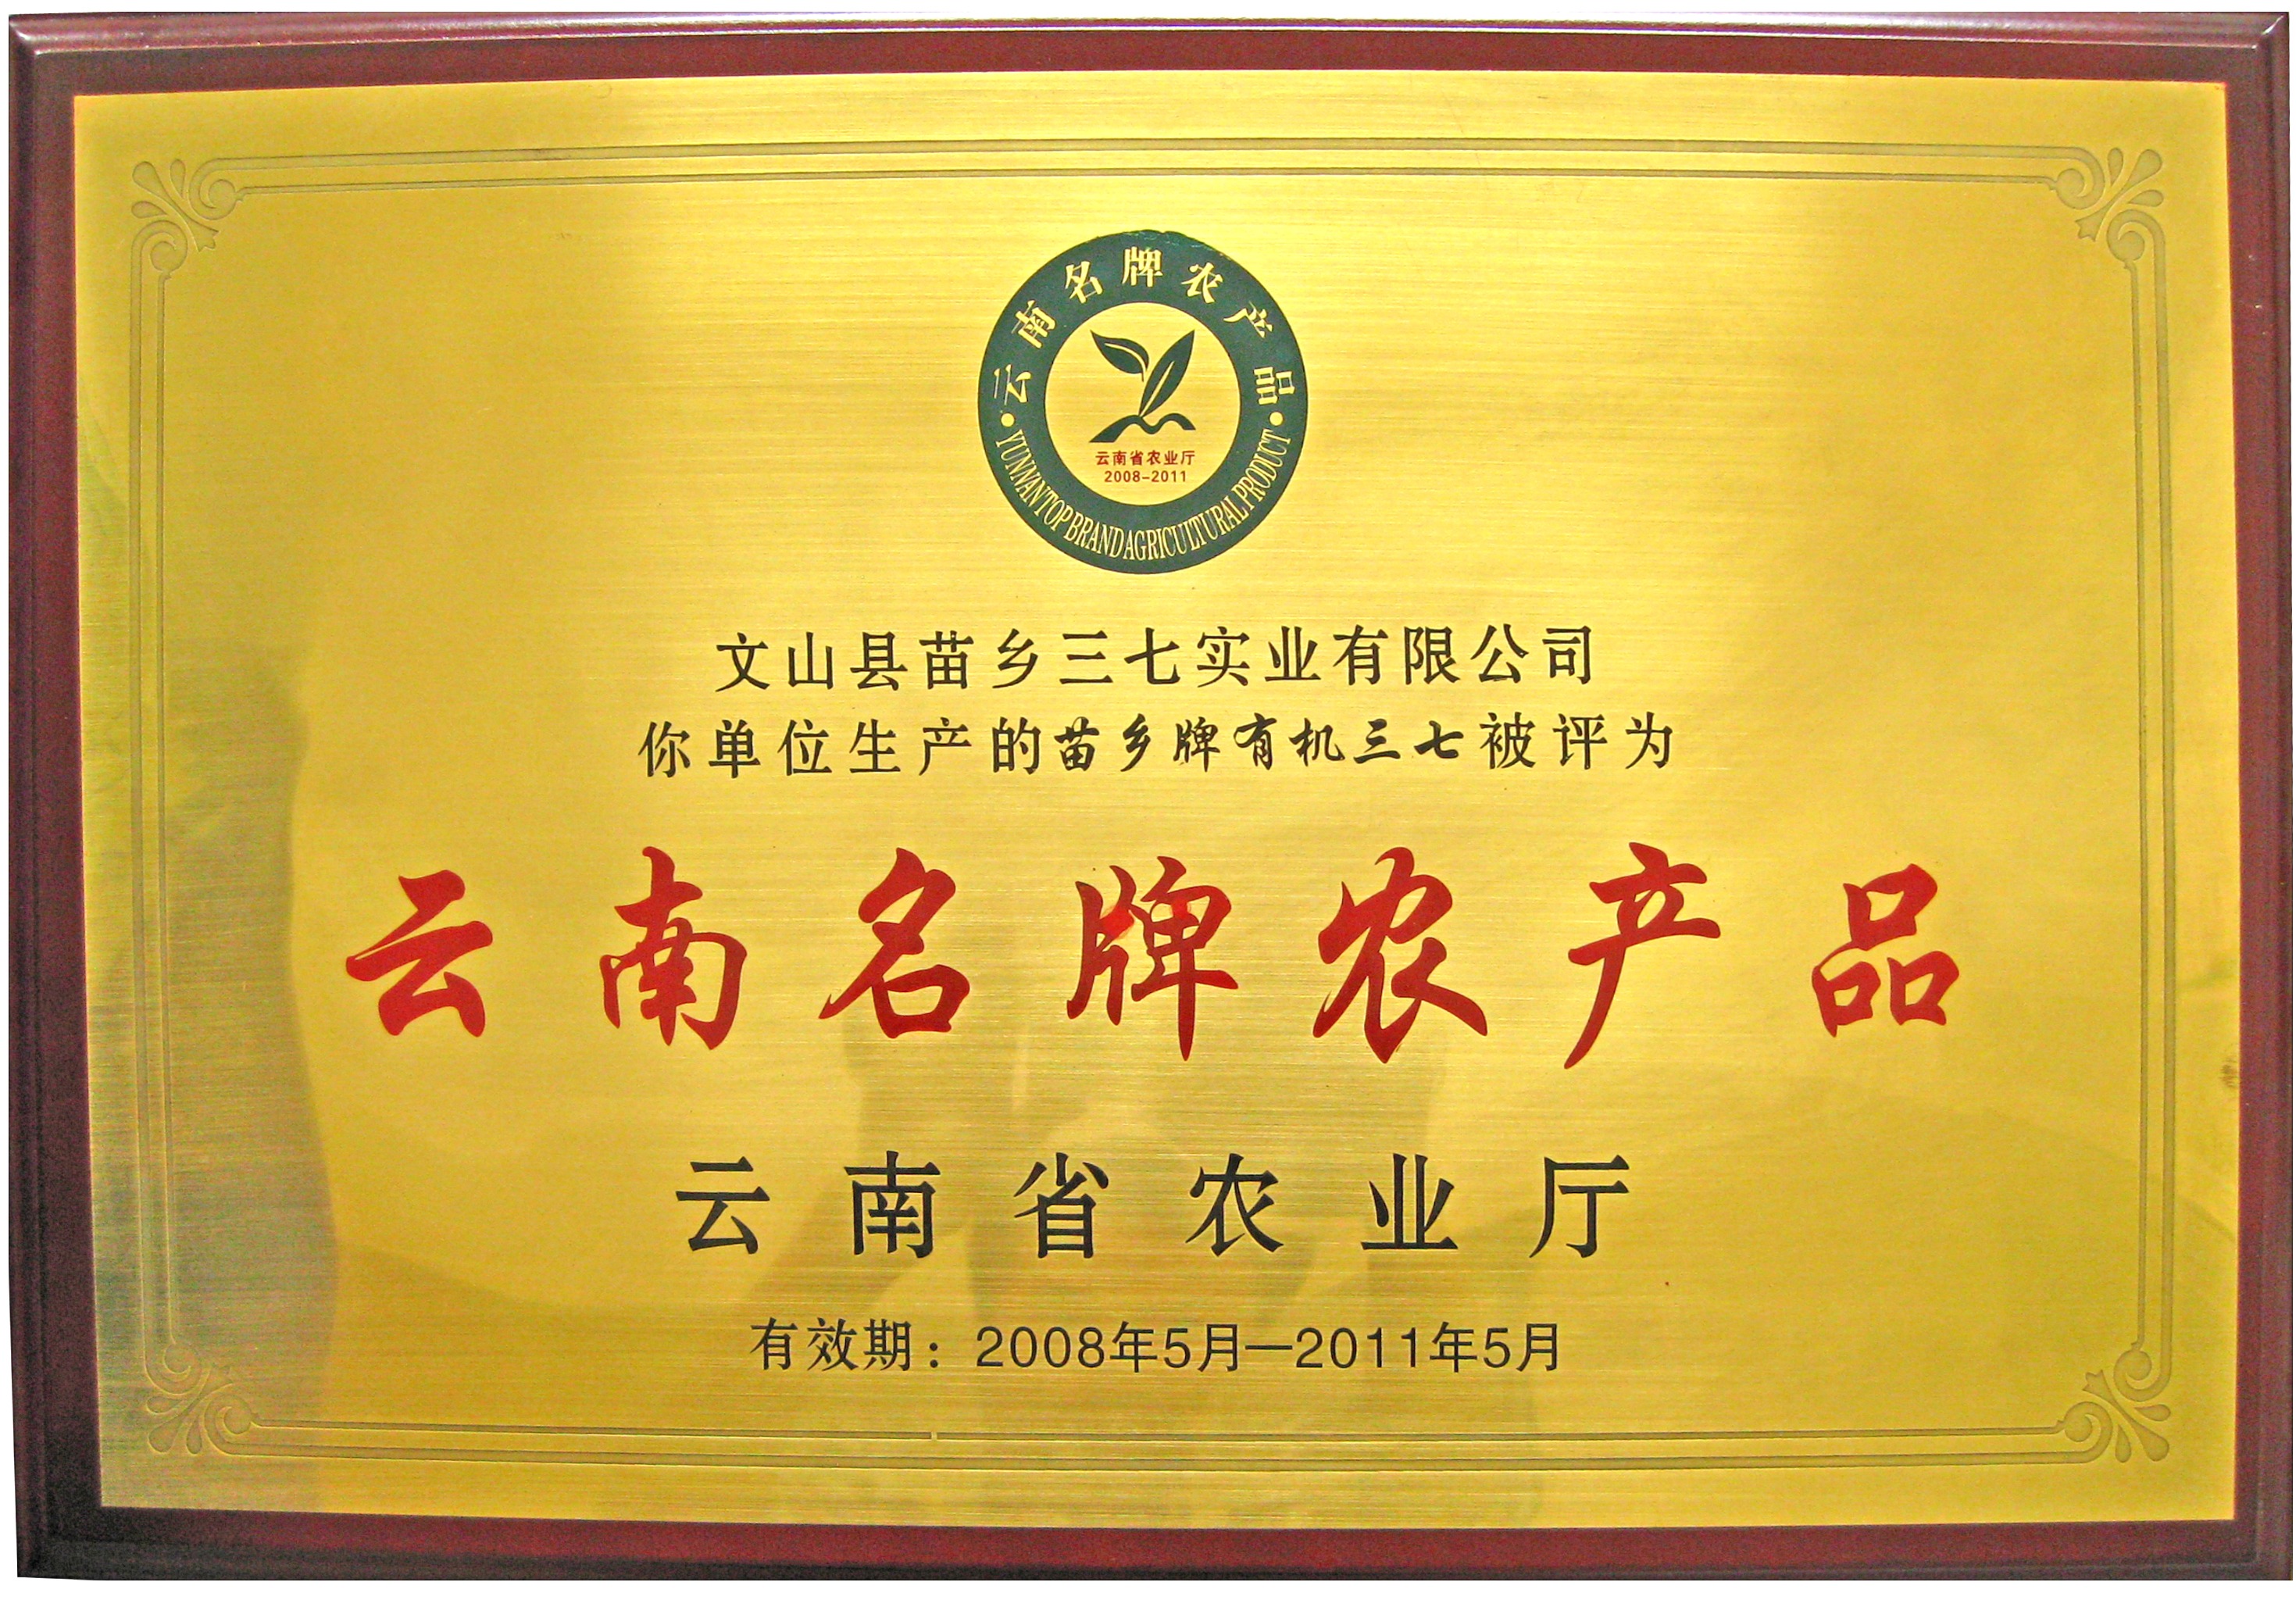 2008年苗乡三七被云南省农业厅评为“云南名牌农产品”